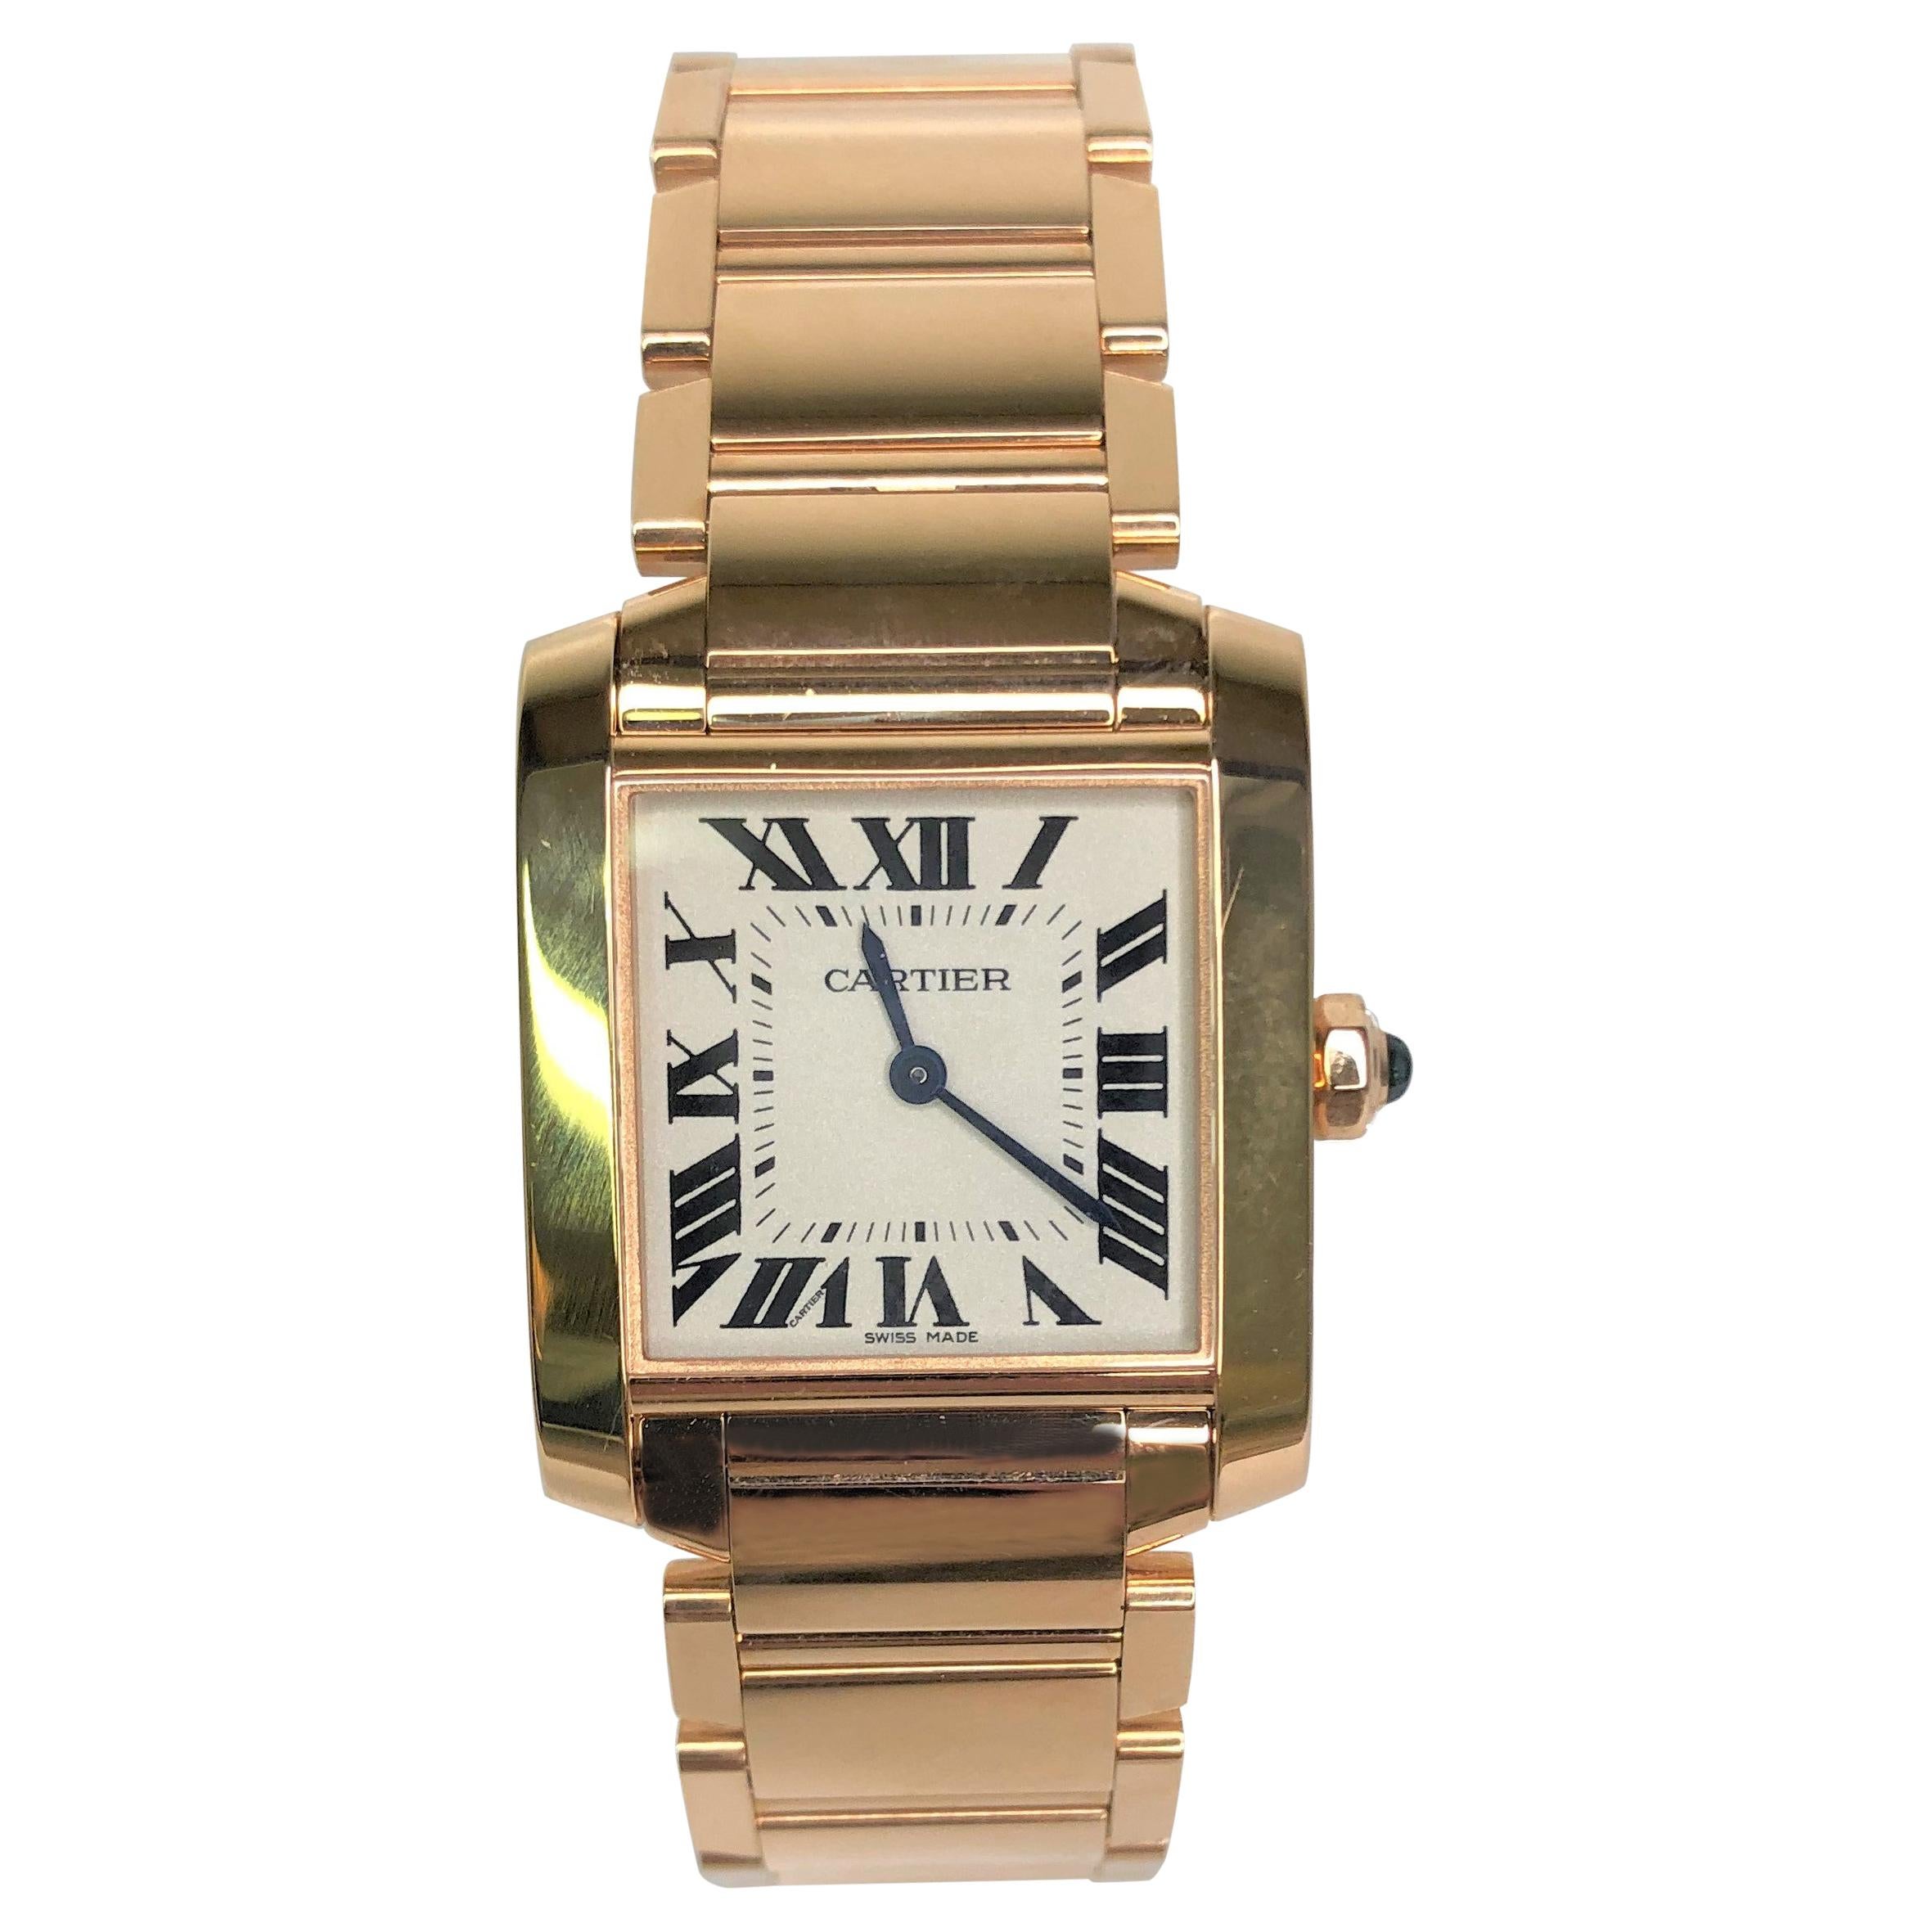 Cartier 18k Rose Gold Tank Francaise Watch